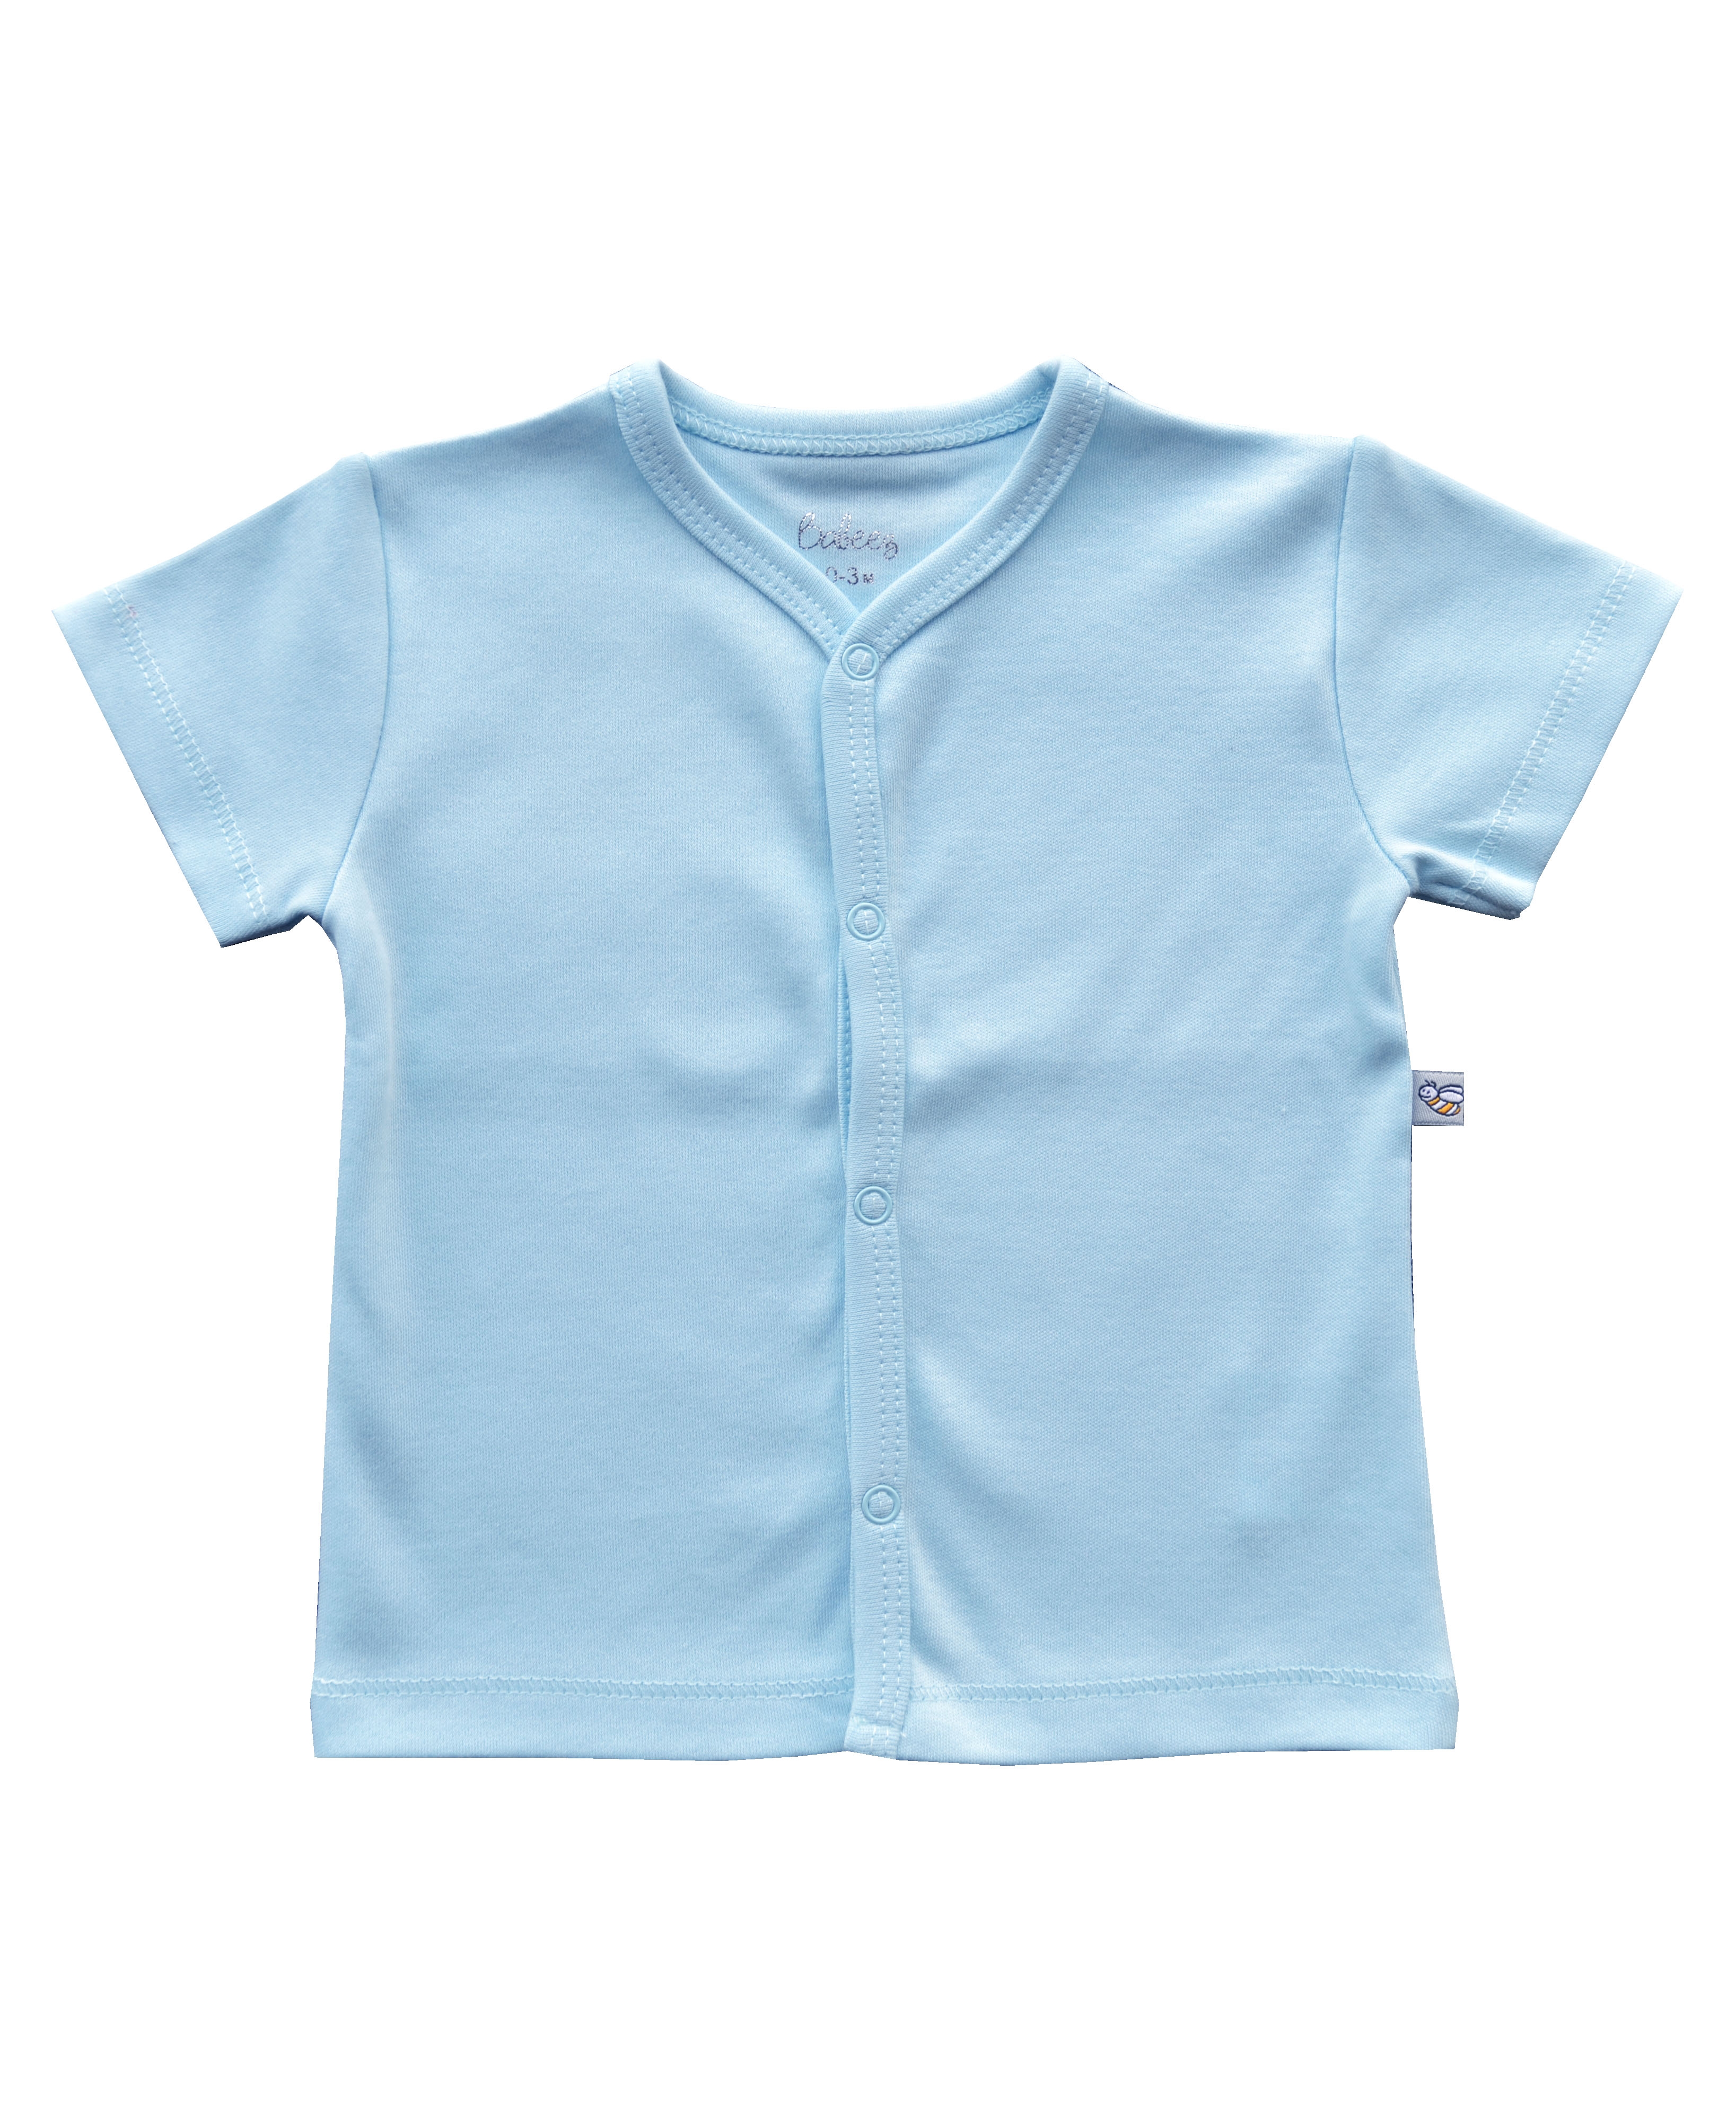 Babeez | Blue Short Sleeve Jhabla (100% Cotton Interlock Biowash) undefined